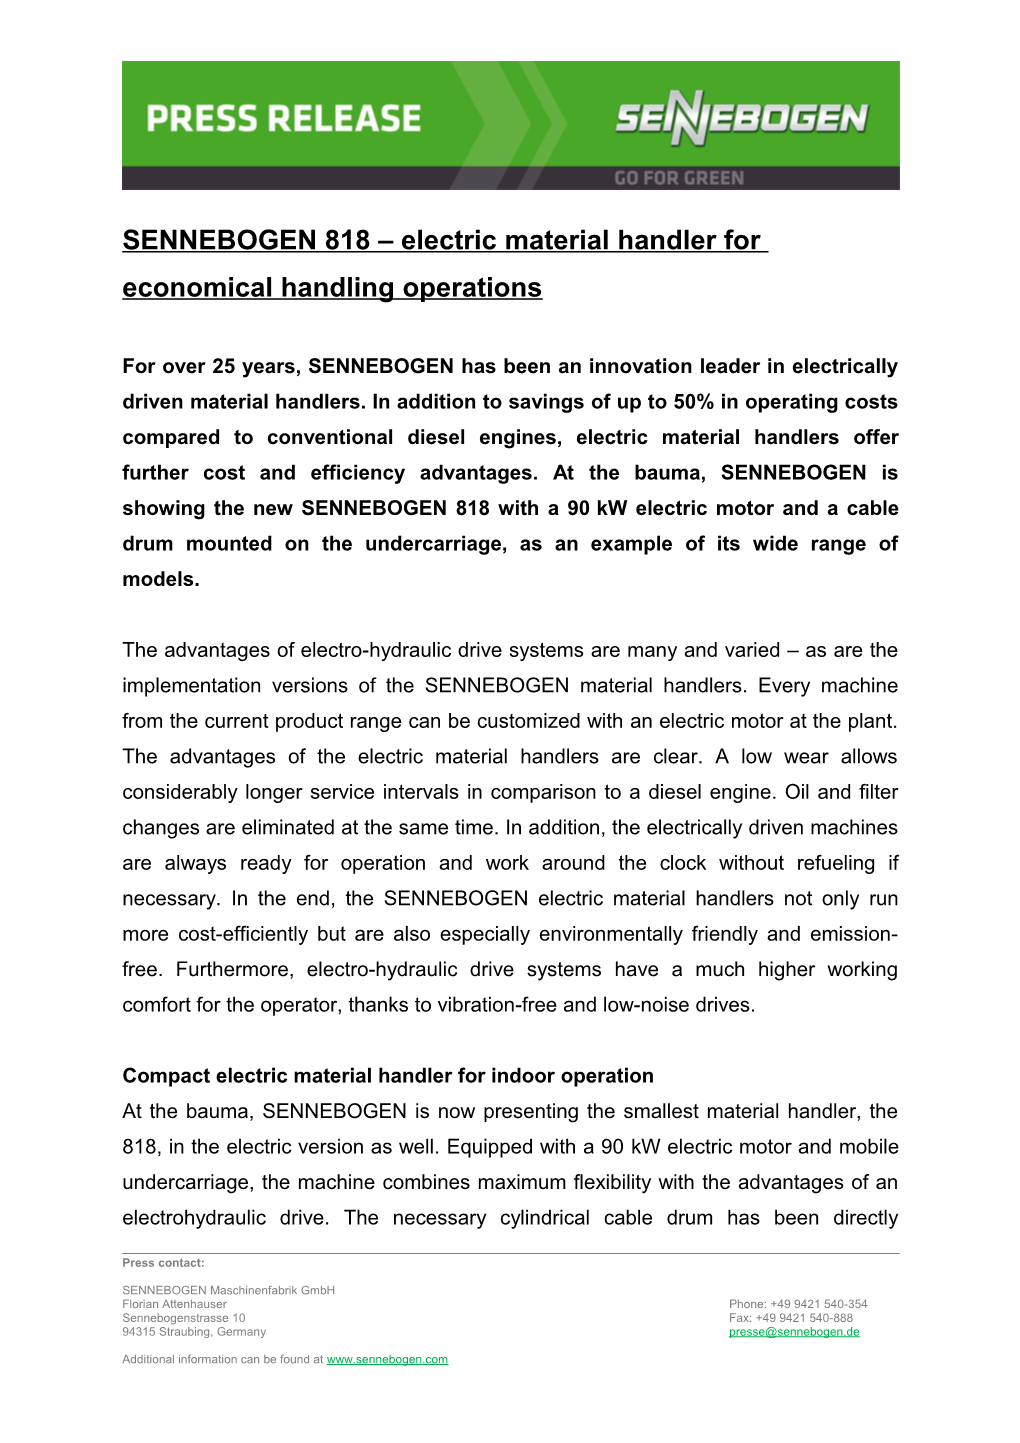 SENNEBOGEN 818 Electric Material Handler for Economical Handling Operations